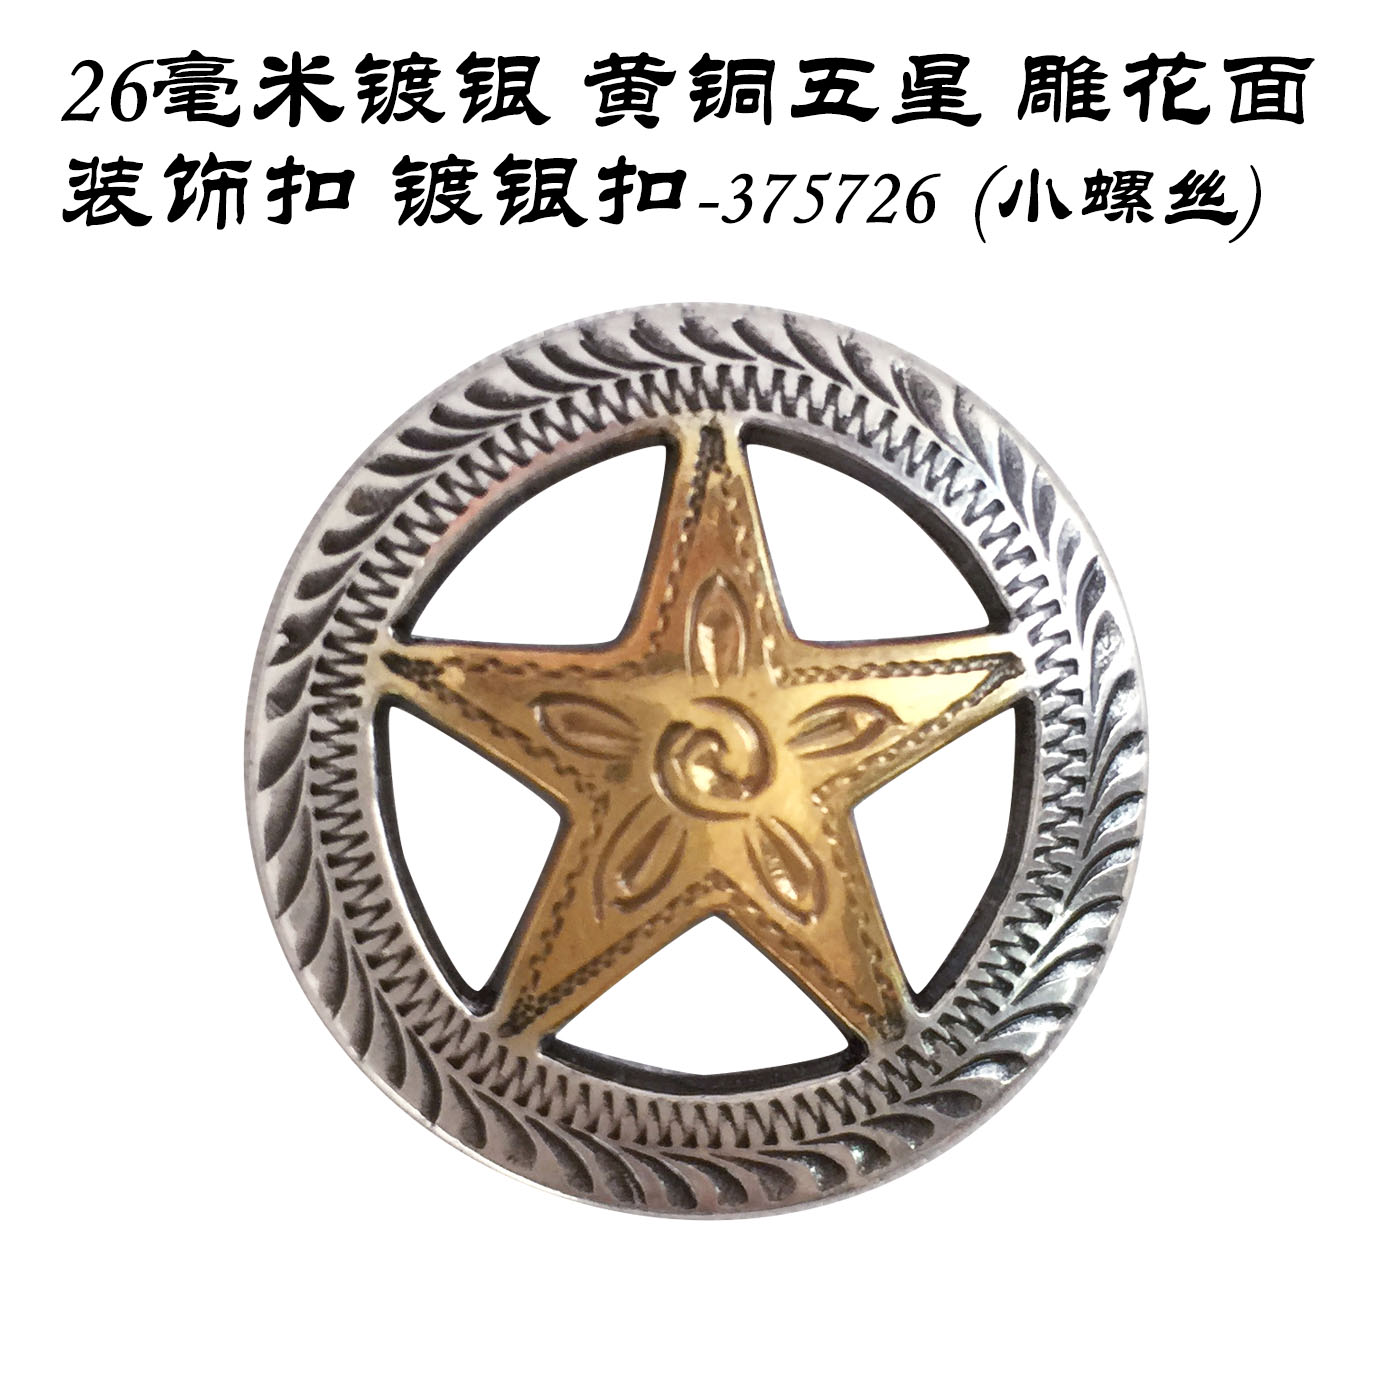 26毫米镀银黄铜五星雕花面装饰扣-375726(小螺丝)-北京皮工坊